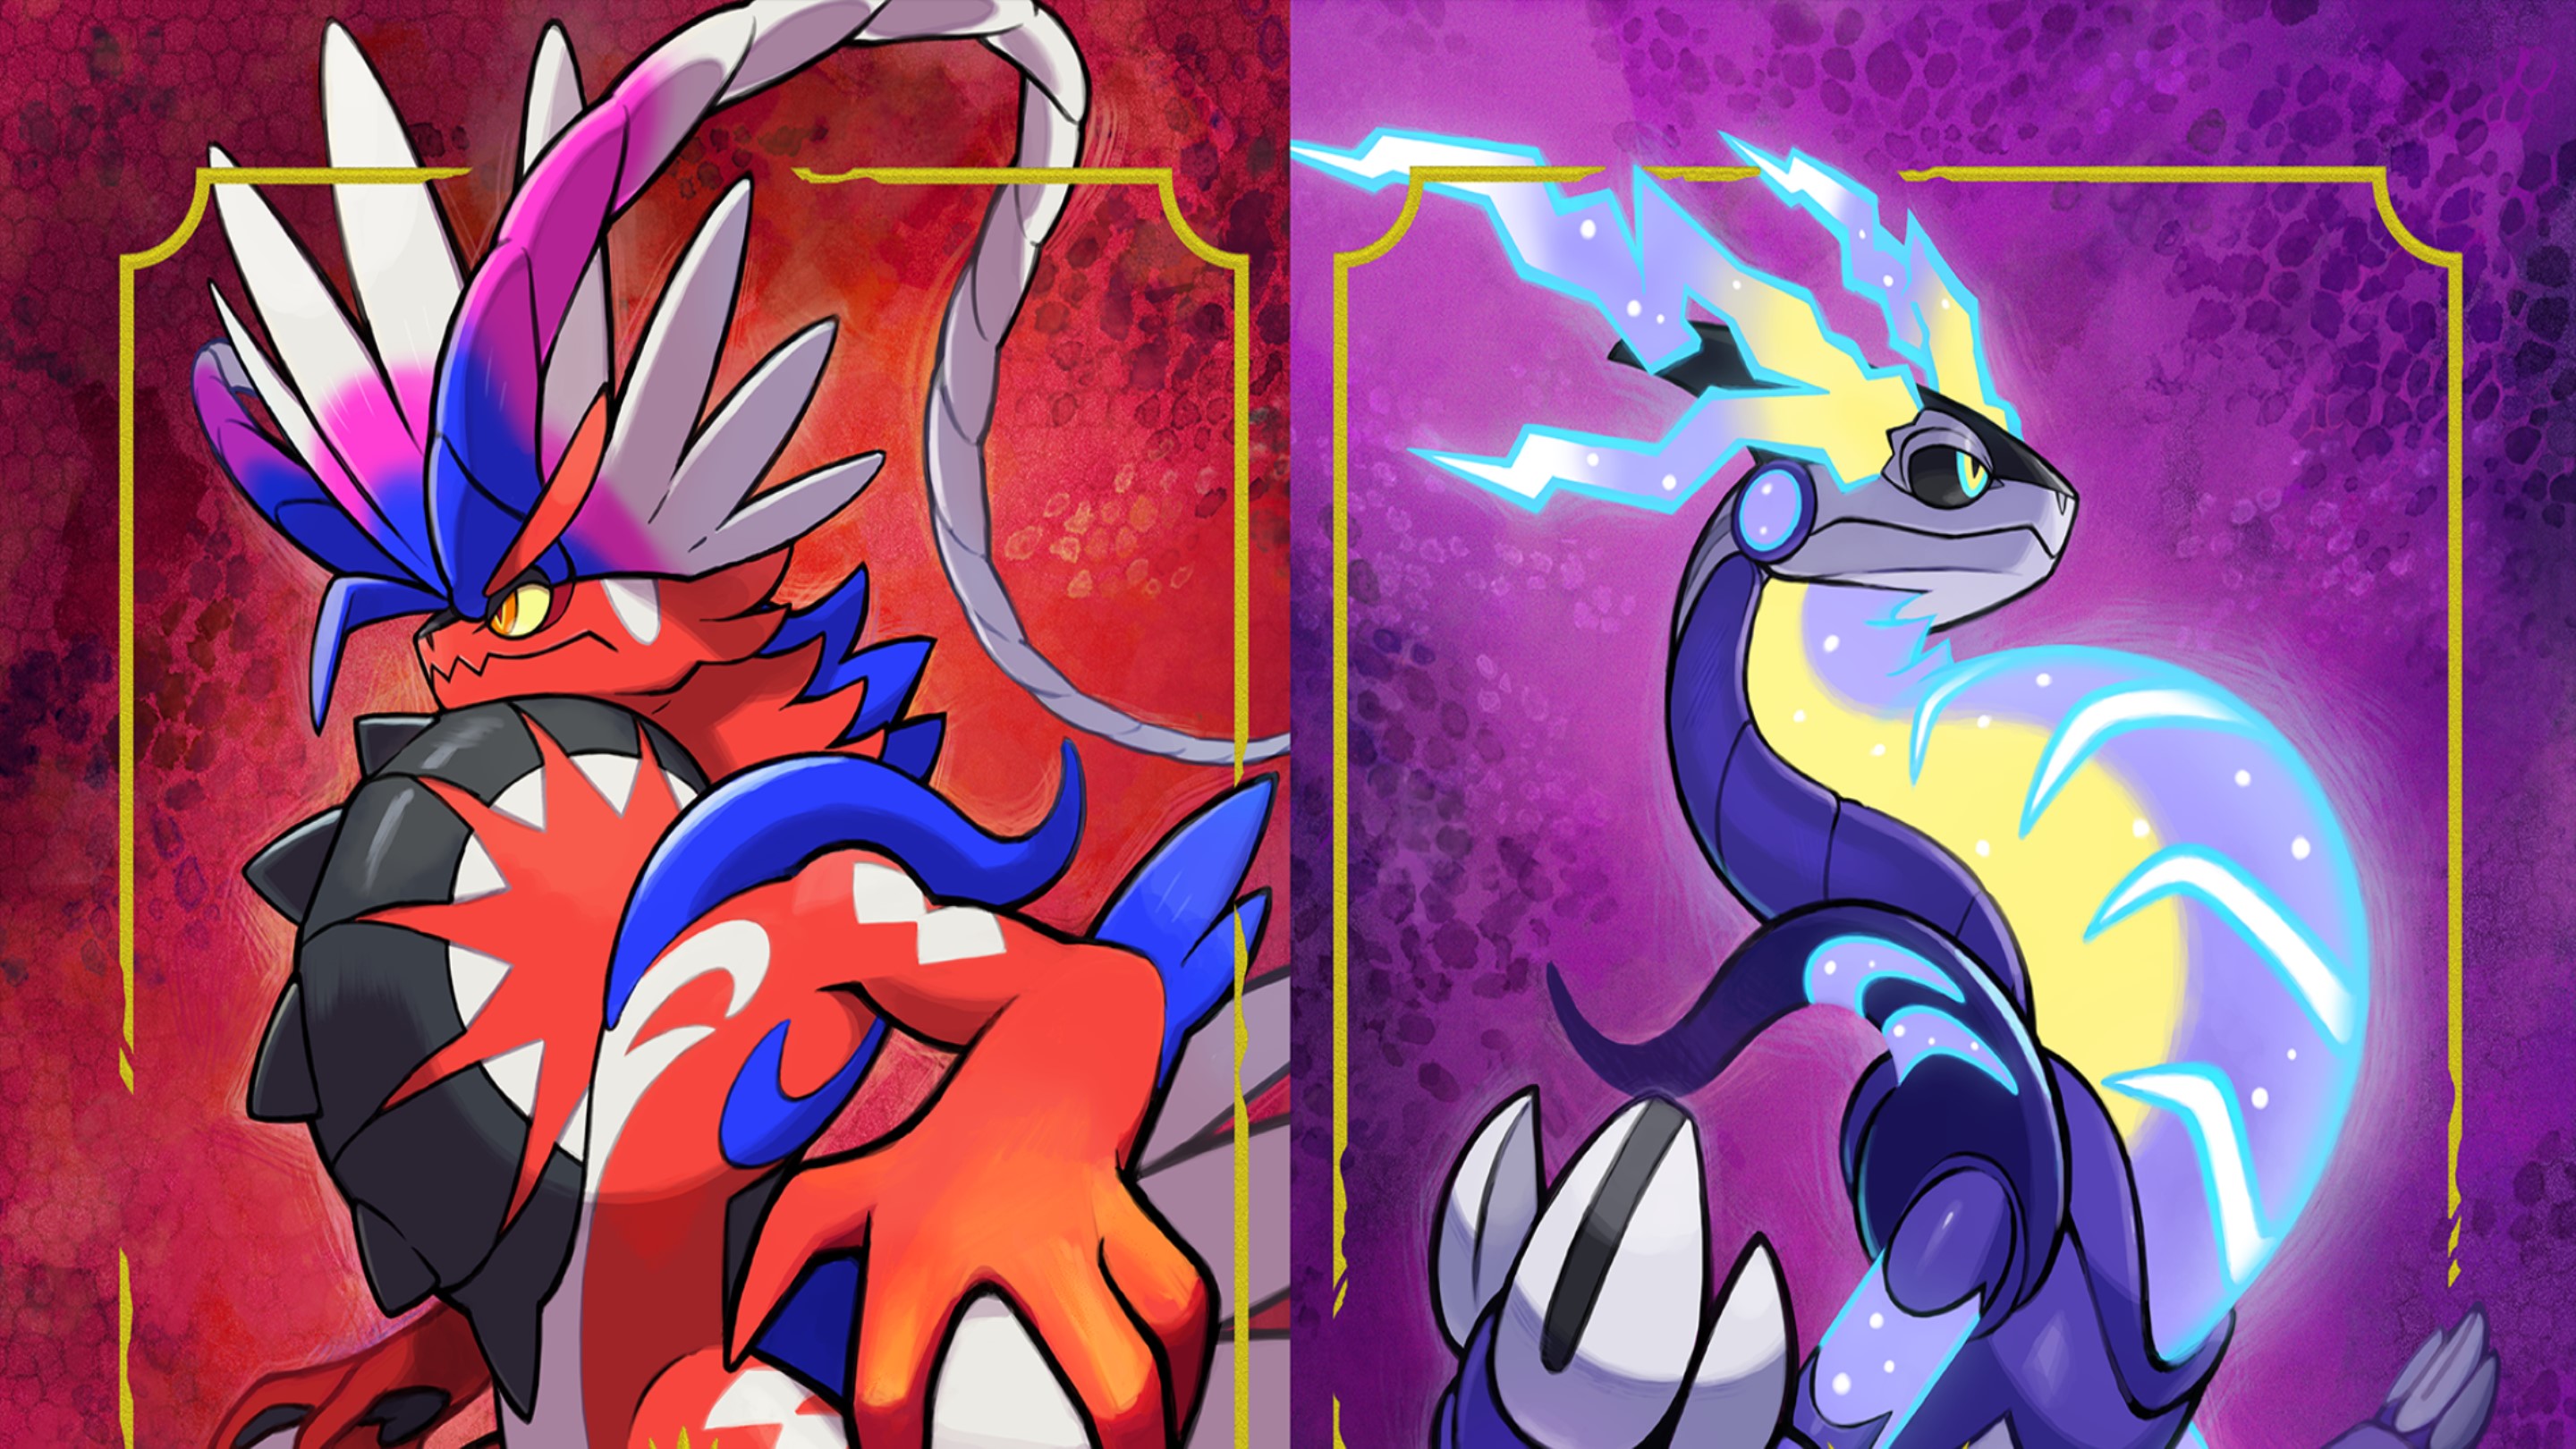 Pokémon Escarlata y Púrpura: Guía para completar gimnasios